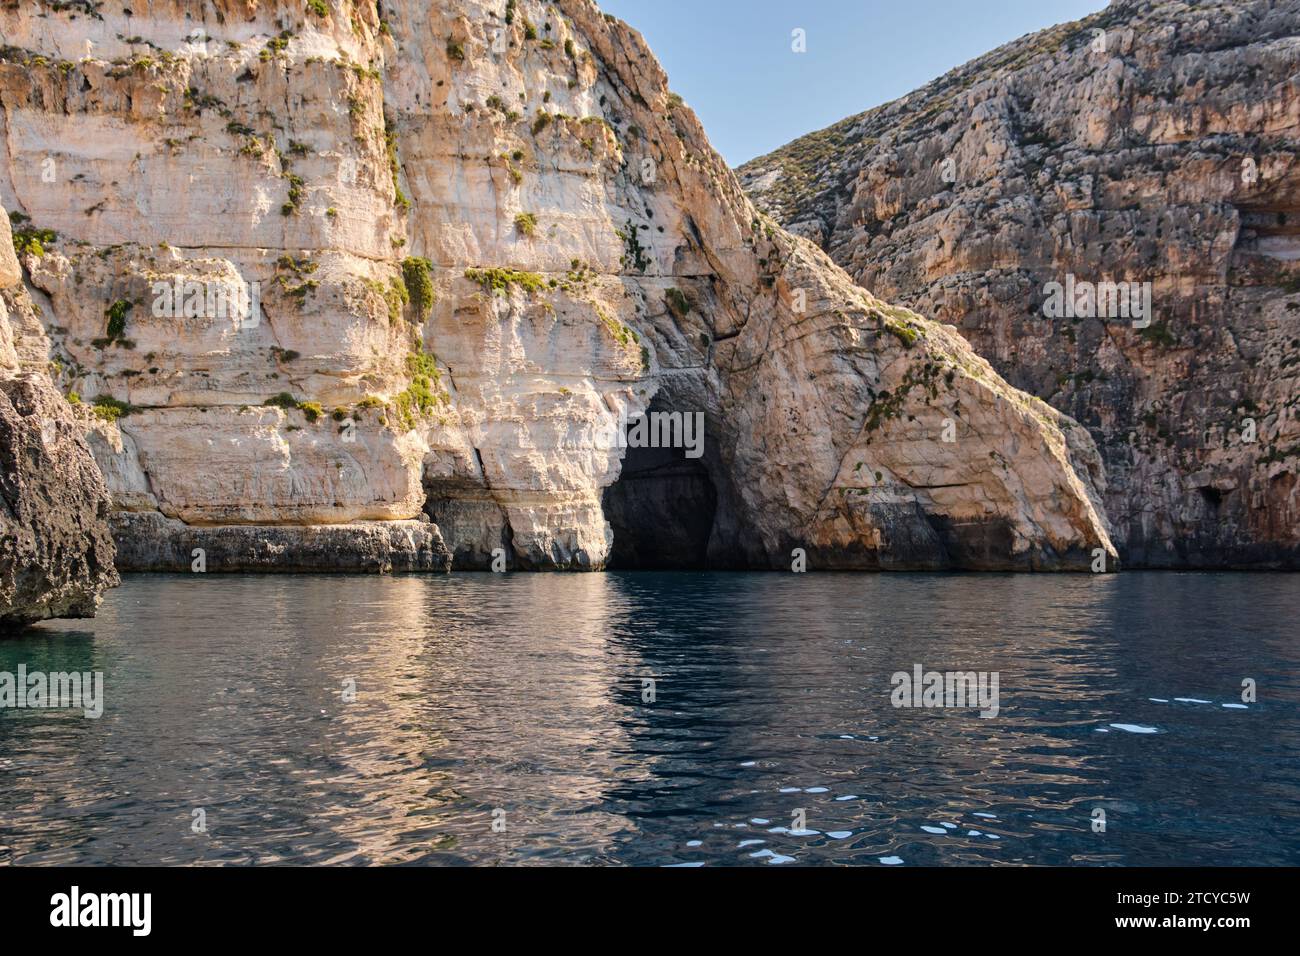 Eine der sechs Höhlen in der Blauen Grotte, die nach vielen Jahrhunderten durch das rauschende Wasser des Meeres geschaffen wurde - Qrendi, Malta Stockfoto